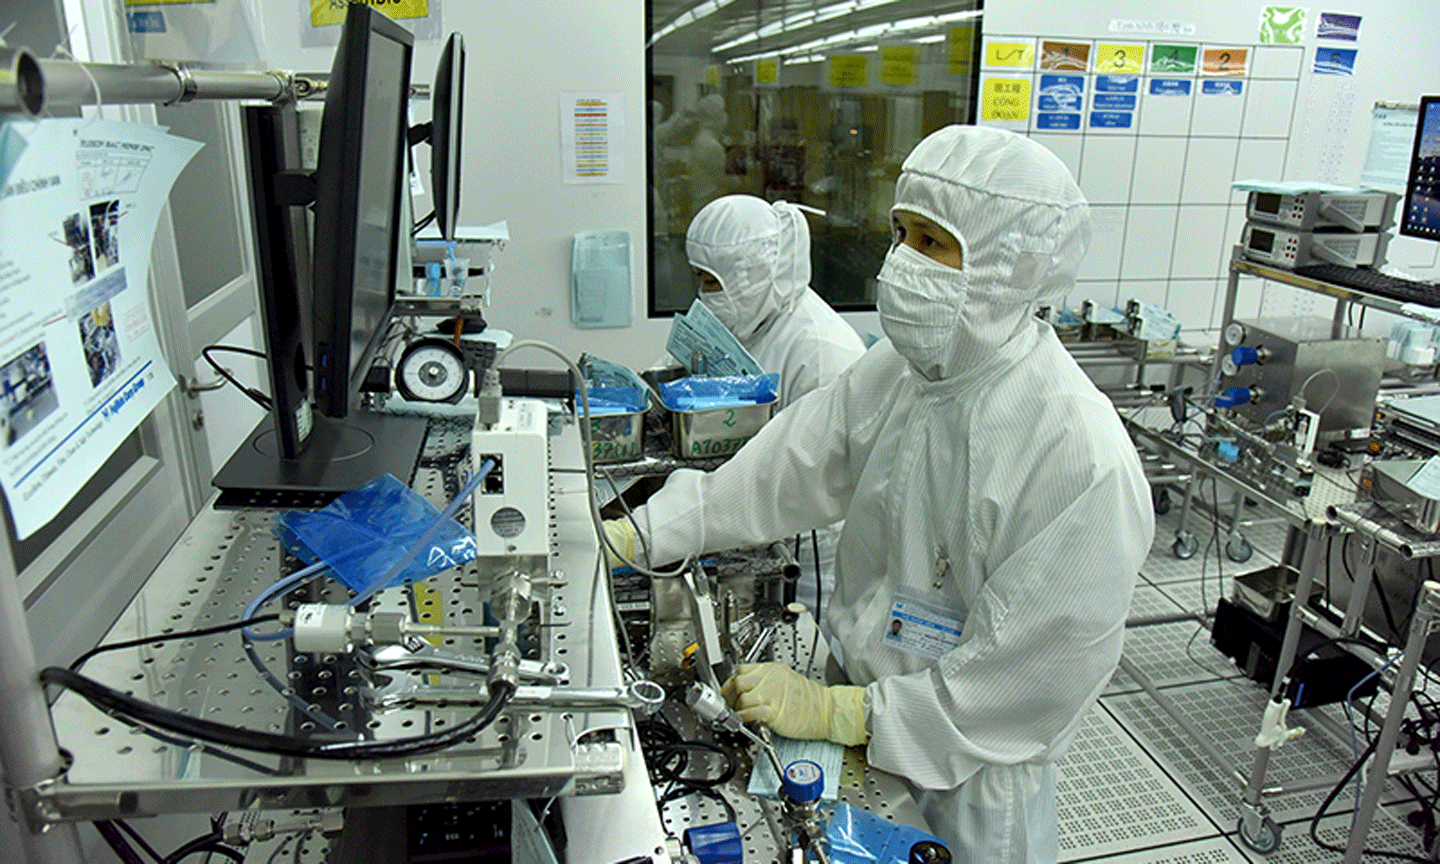 Công nhân làm việc tại Khu công nghiệp VSIP Bắc Ninh được trang bị đồ bảo hộ chống dịch Covid-19, bảo đảm hoạt động sản xuất. Ảnh: Thanh Trúc